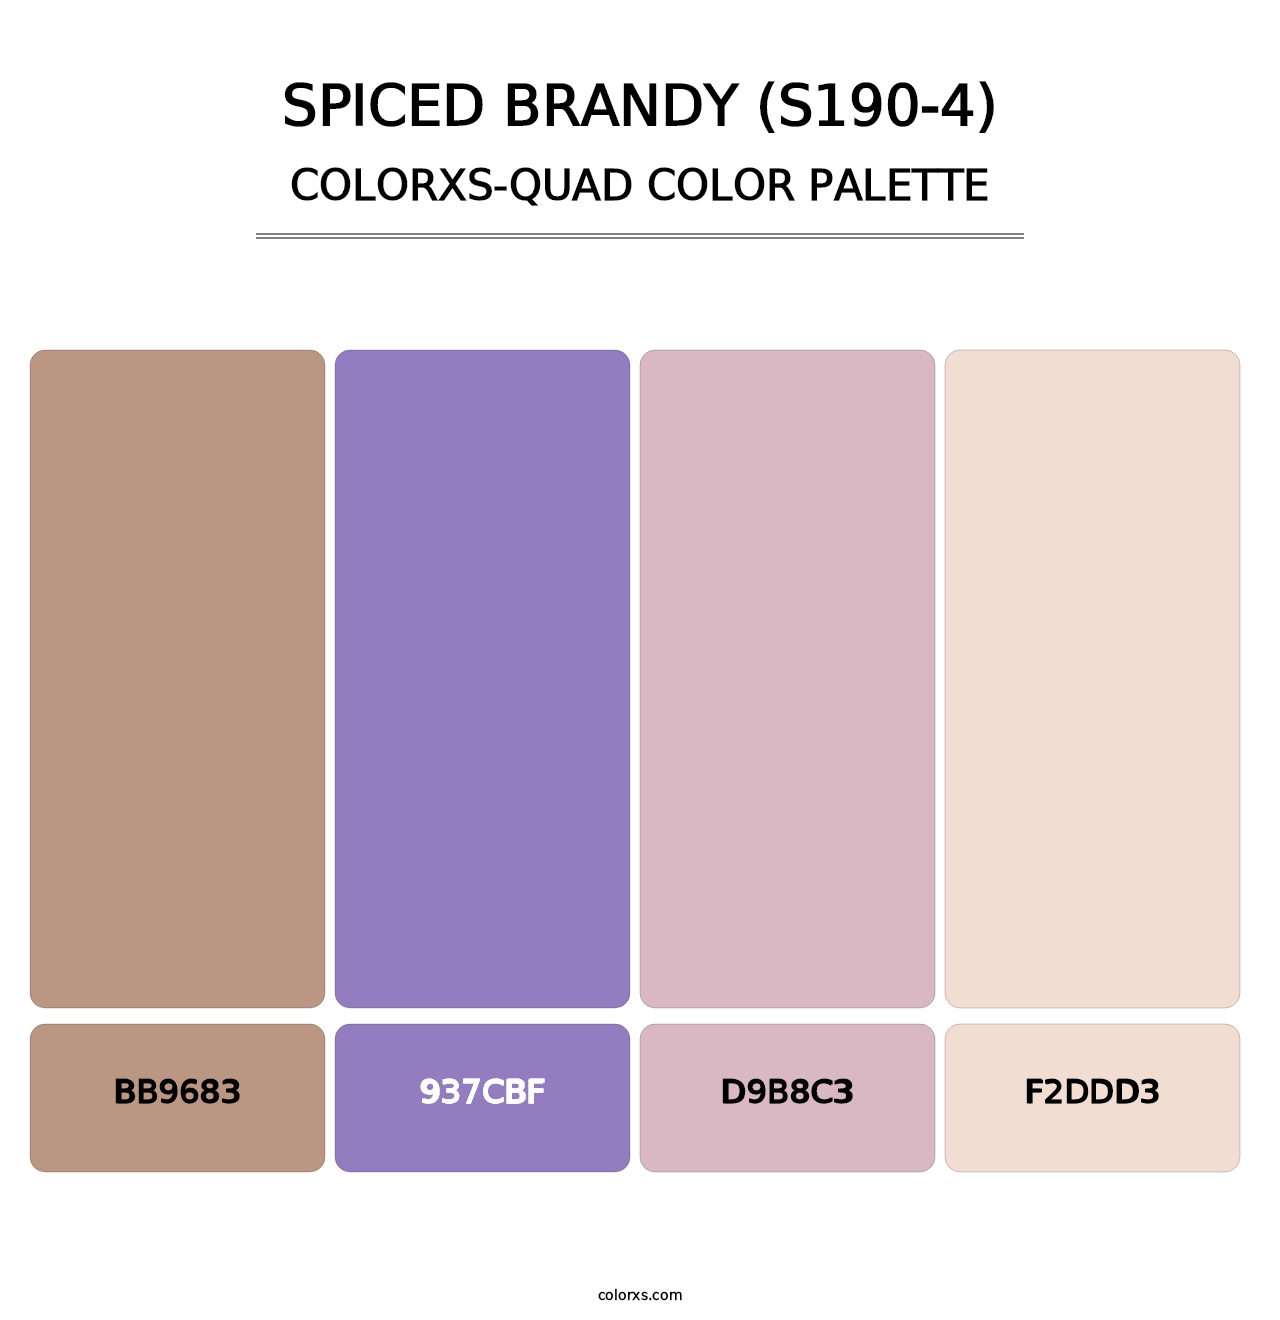 Spiced Brandy (S190-4) - Colorxs Quad Palette